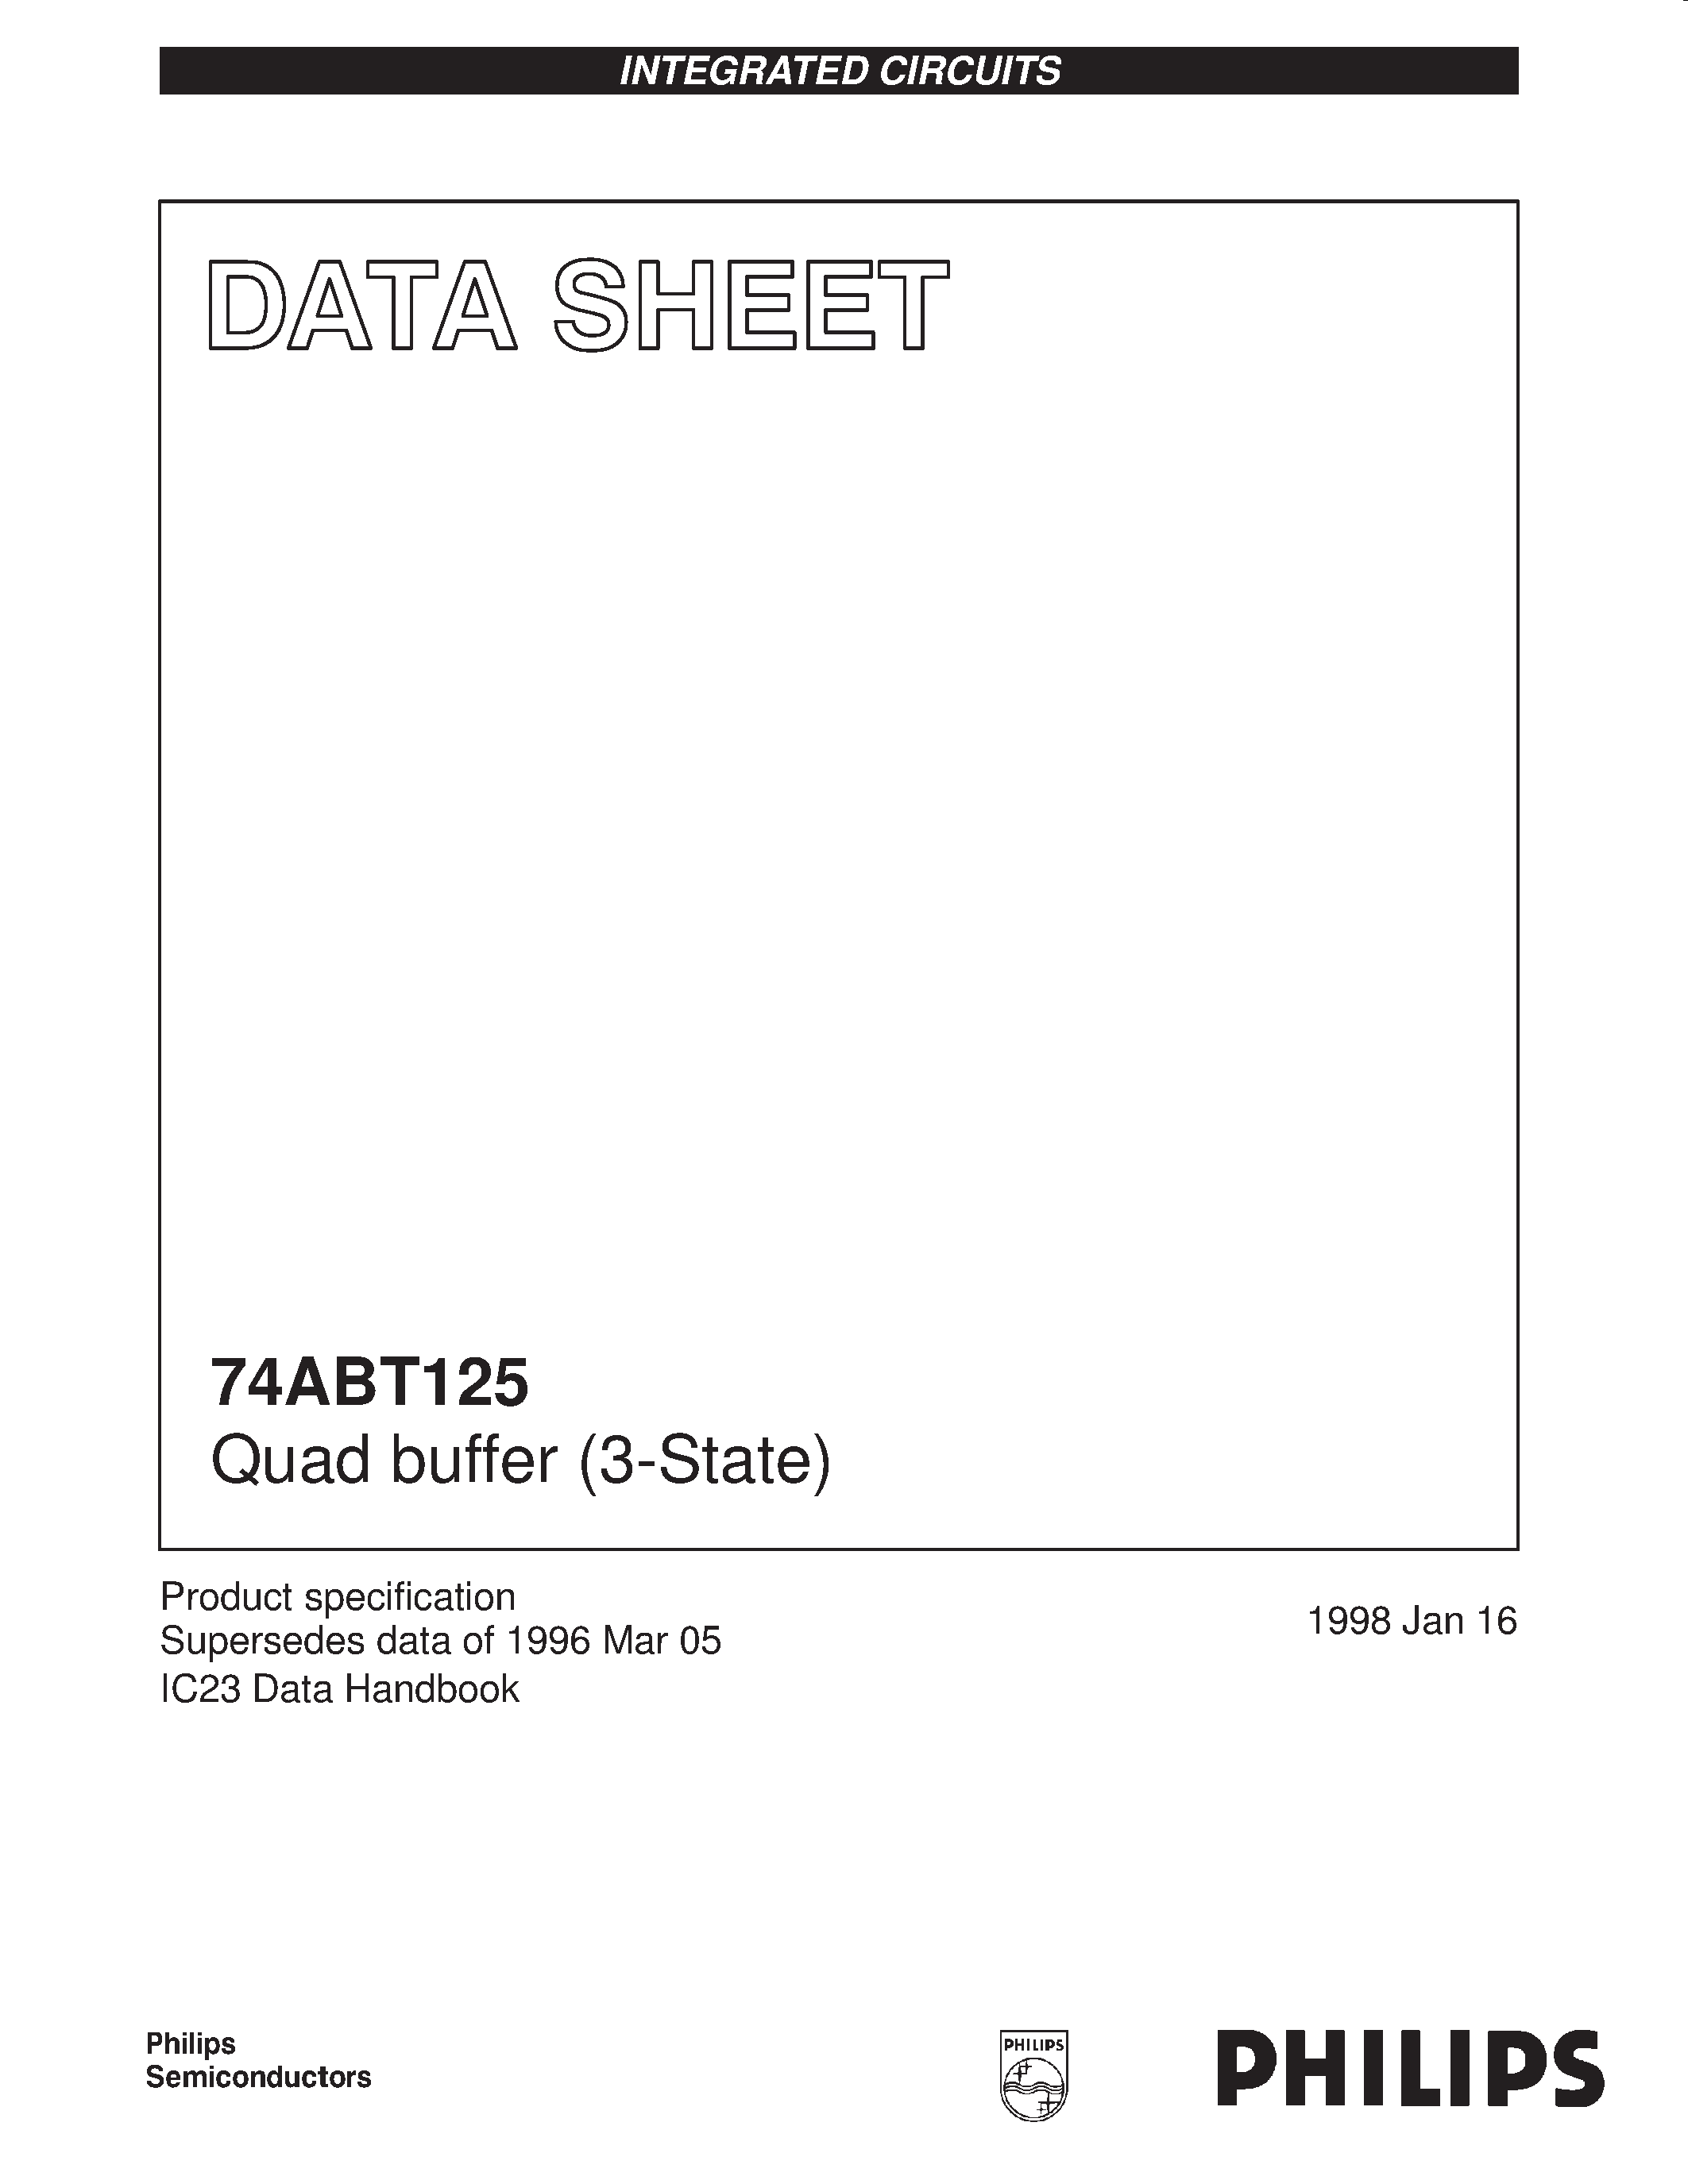 Даташит 74ABT125 - Quad buffer 3-State страница 1